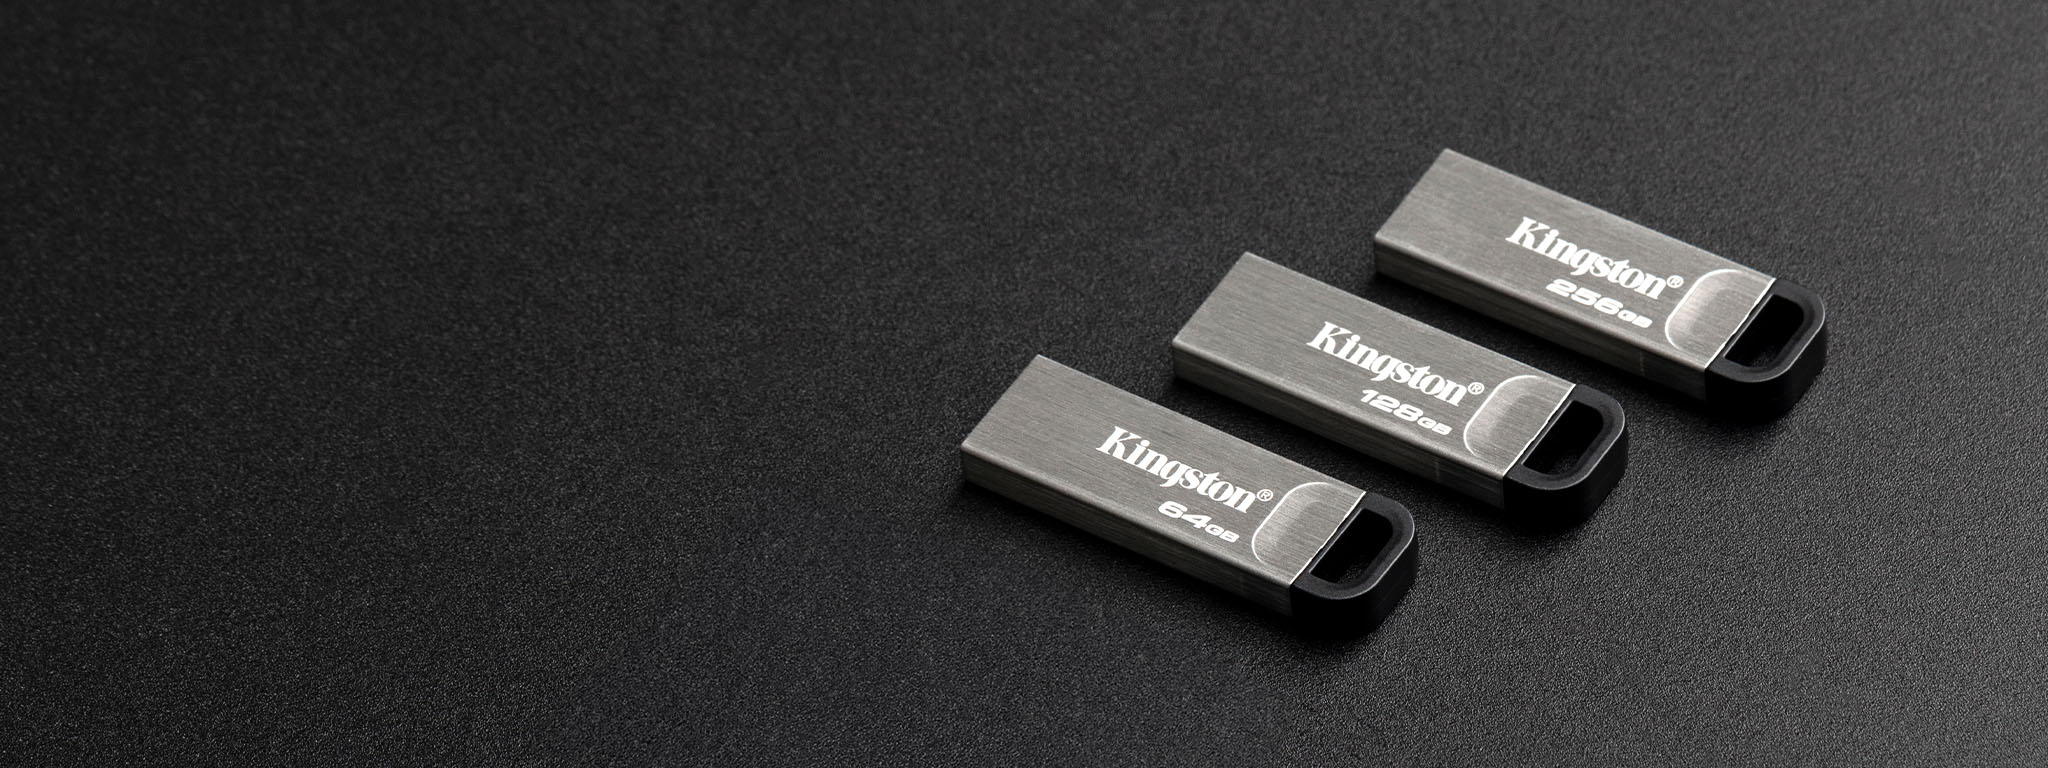 ภาพมุมสูงของ DT Kyson แฟลชไดรฟ์ USB สี่ชิ้นที่มีความจุต่างกันวางอยู่บนพื้นผิวสีดำ